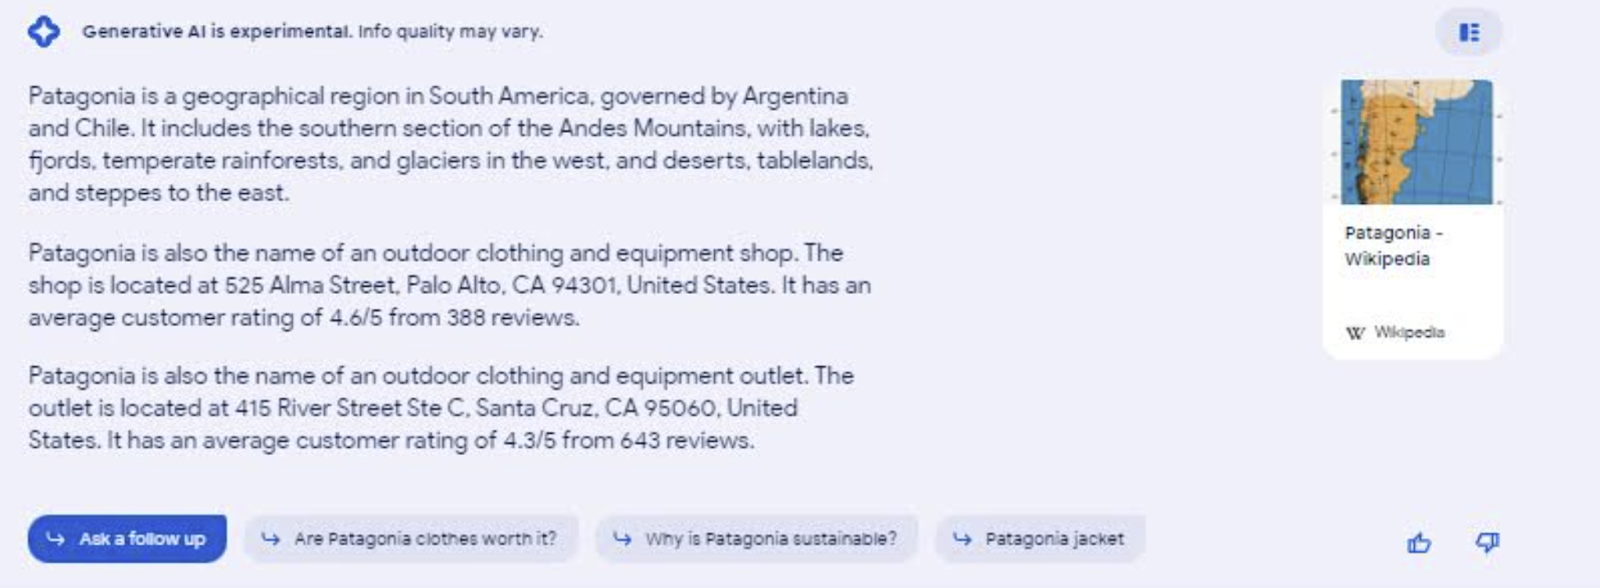 Una búsqueda sobre patagonia revela la incertidumbre de la SGE sobre si la intención de la búsqueda es encontrar una tienda o leer sobre una región geográfica.